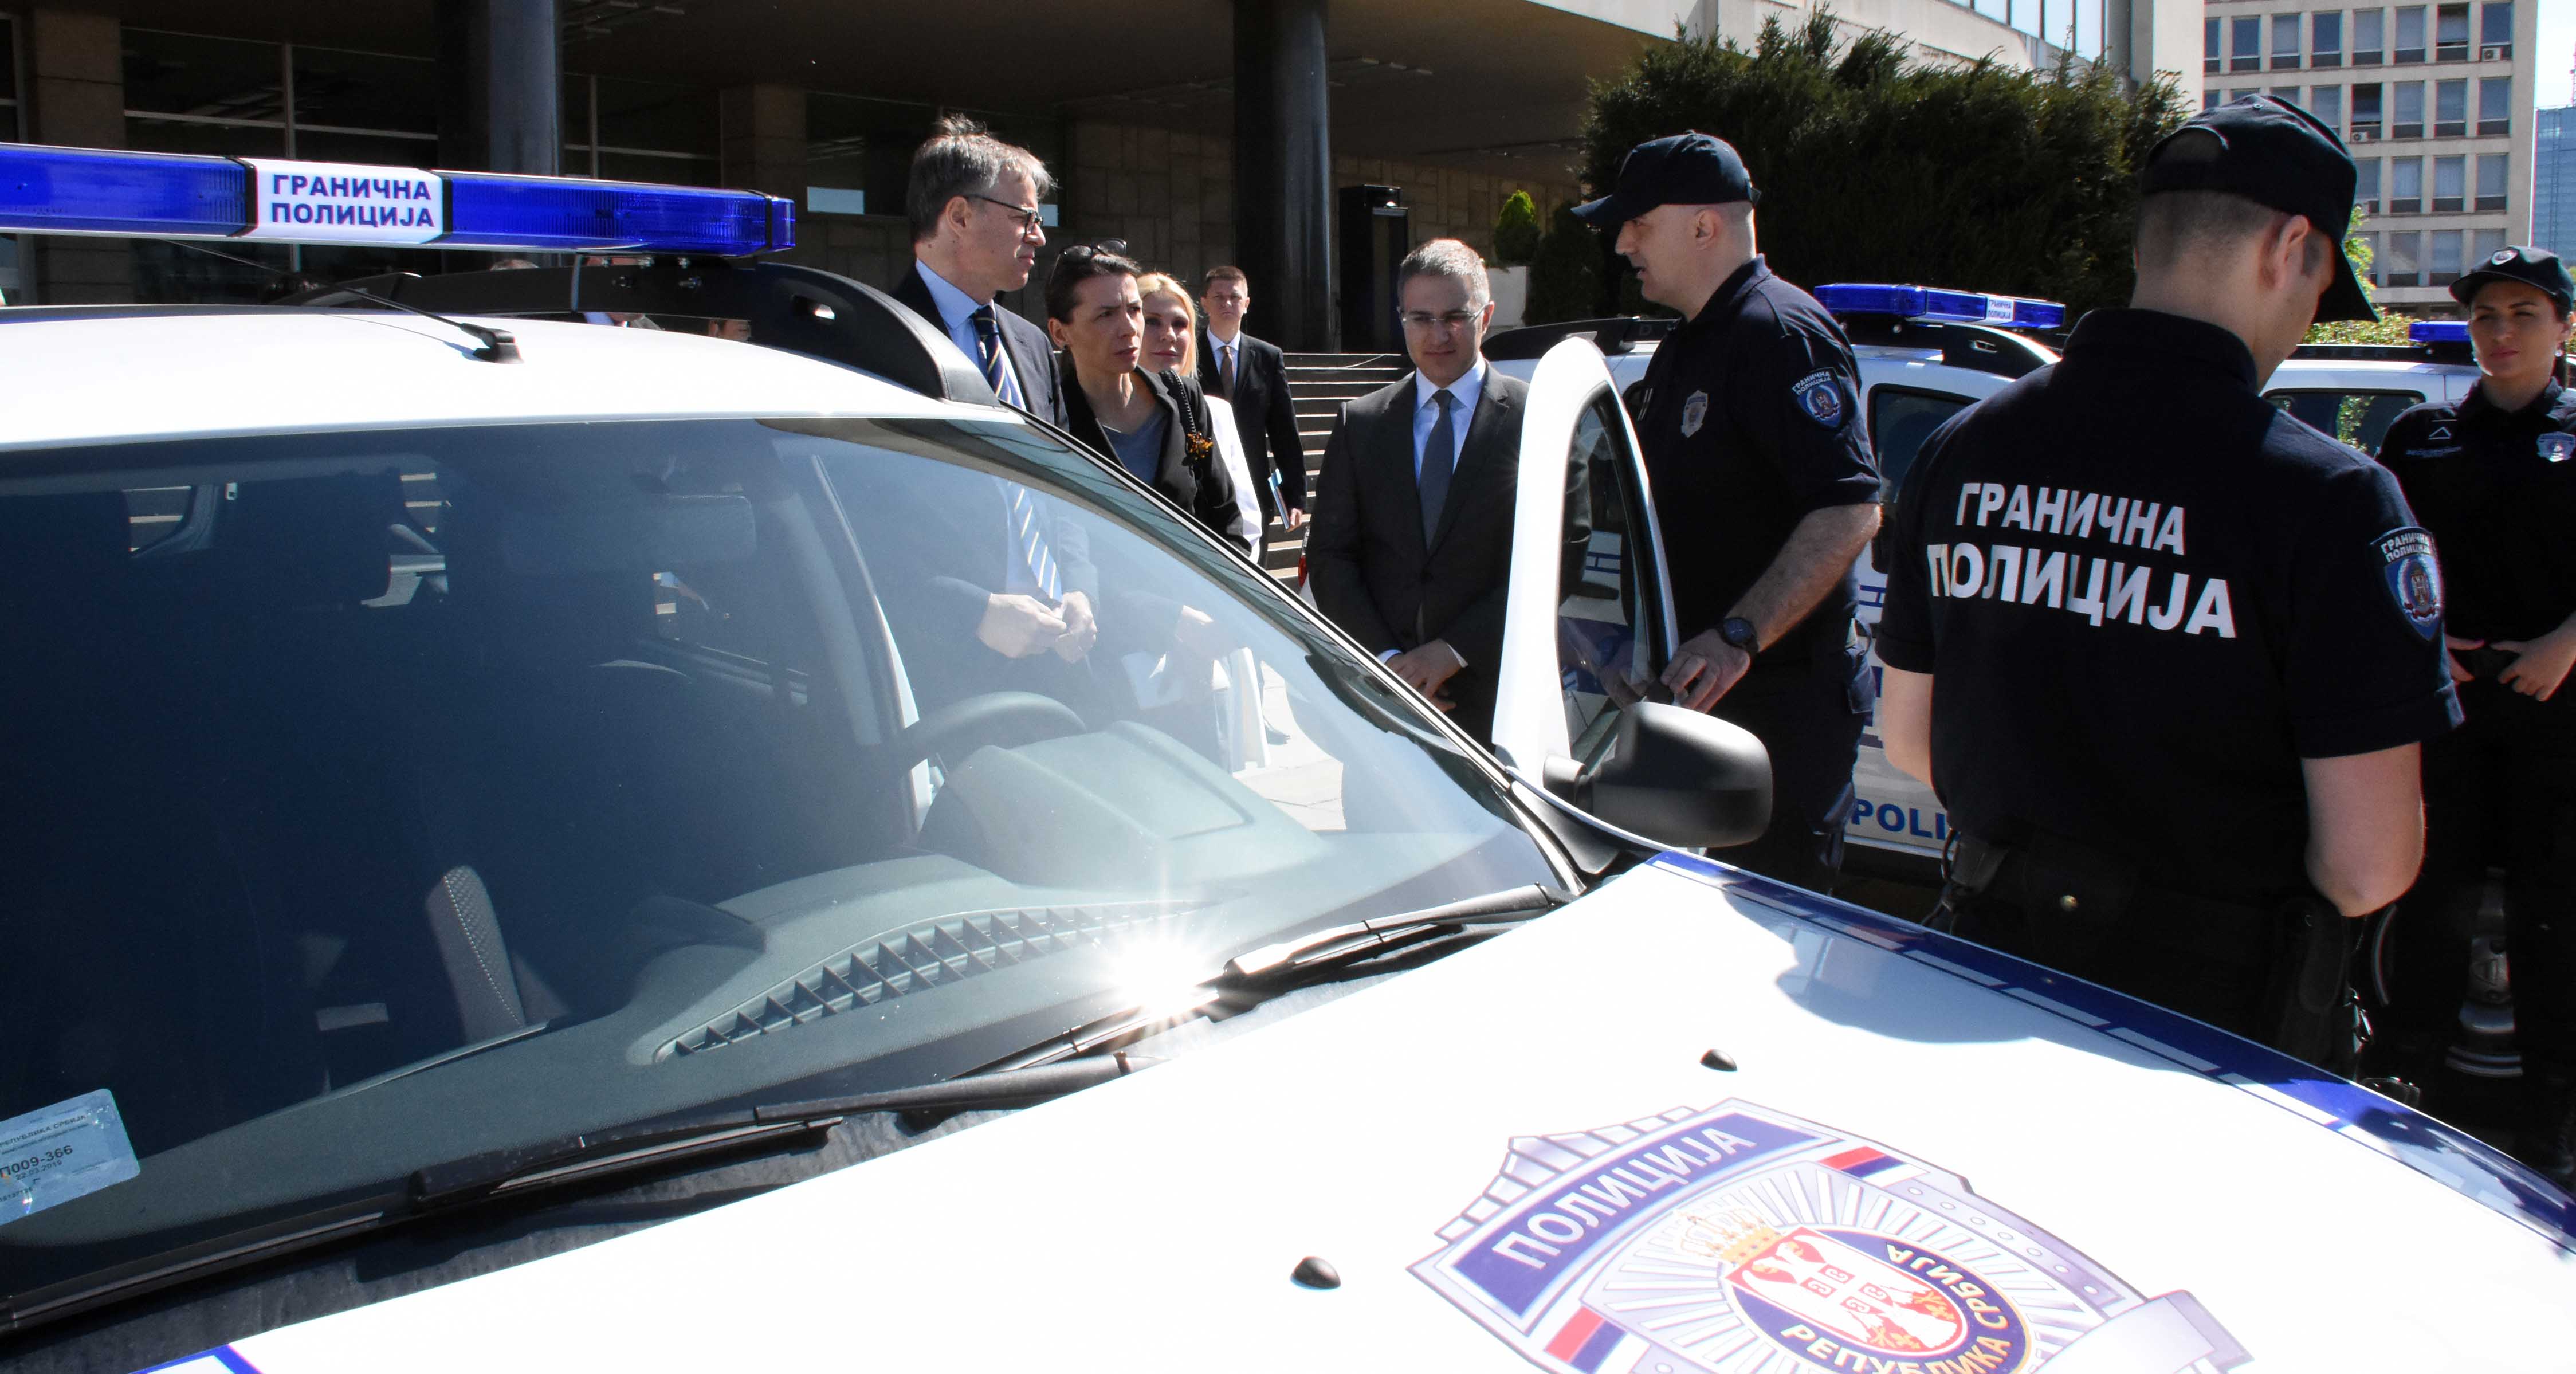  Немачко Савезно министарство унутрашњих послова донирало Управи граничне полиције 20 теренских возила